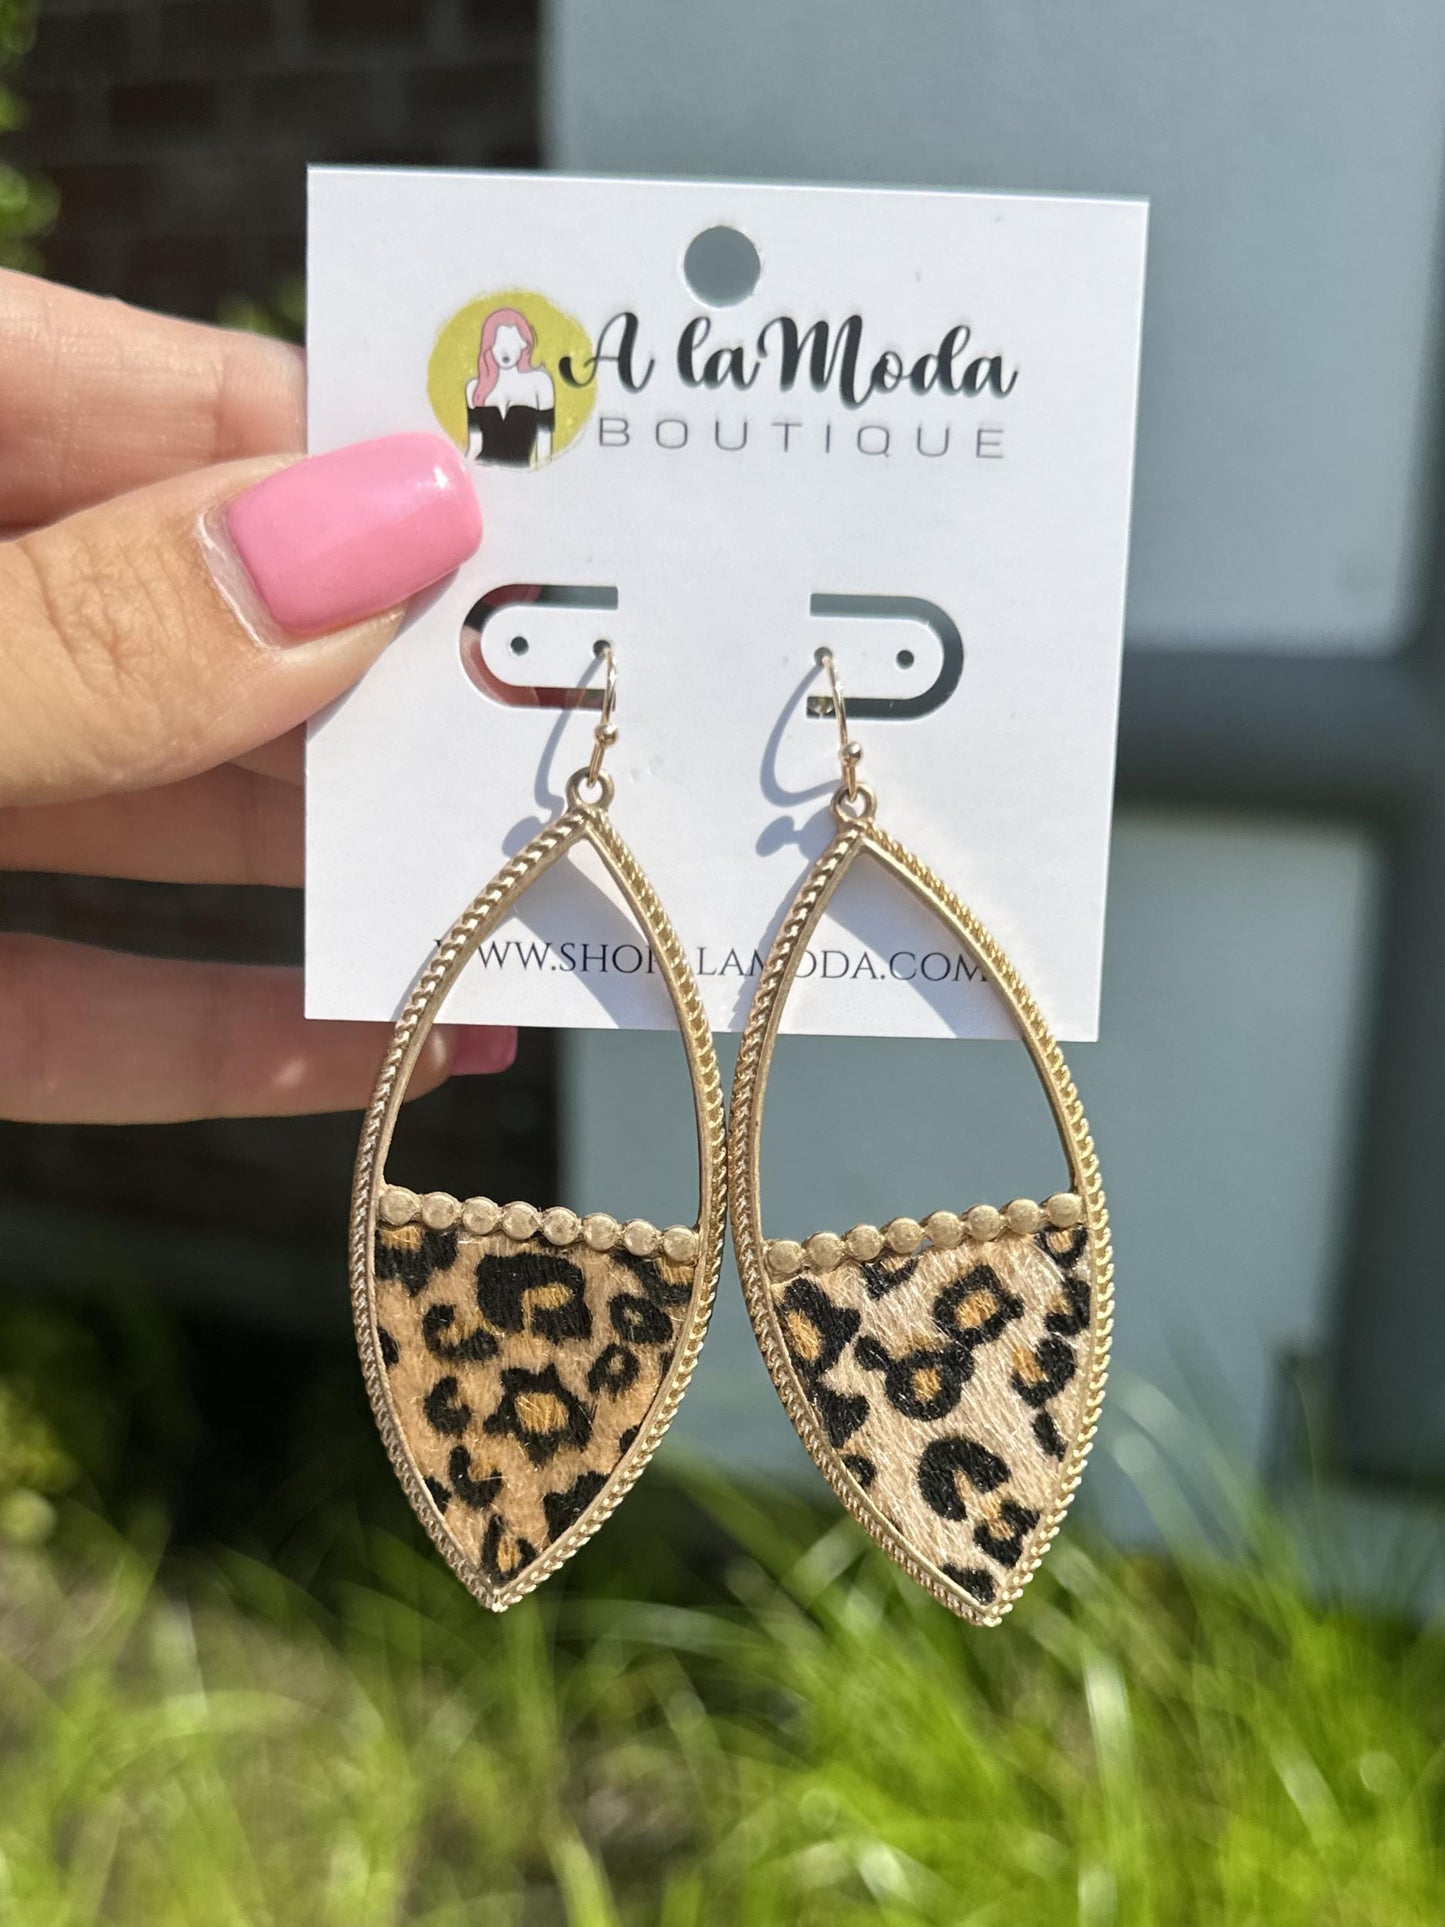 Leopard Print Leather Drop Earrings